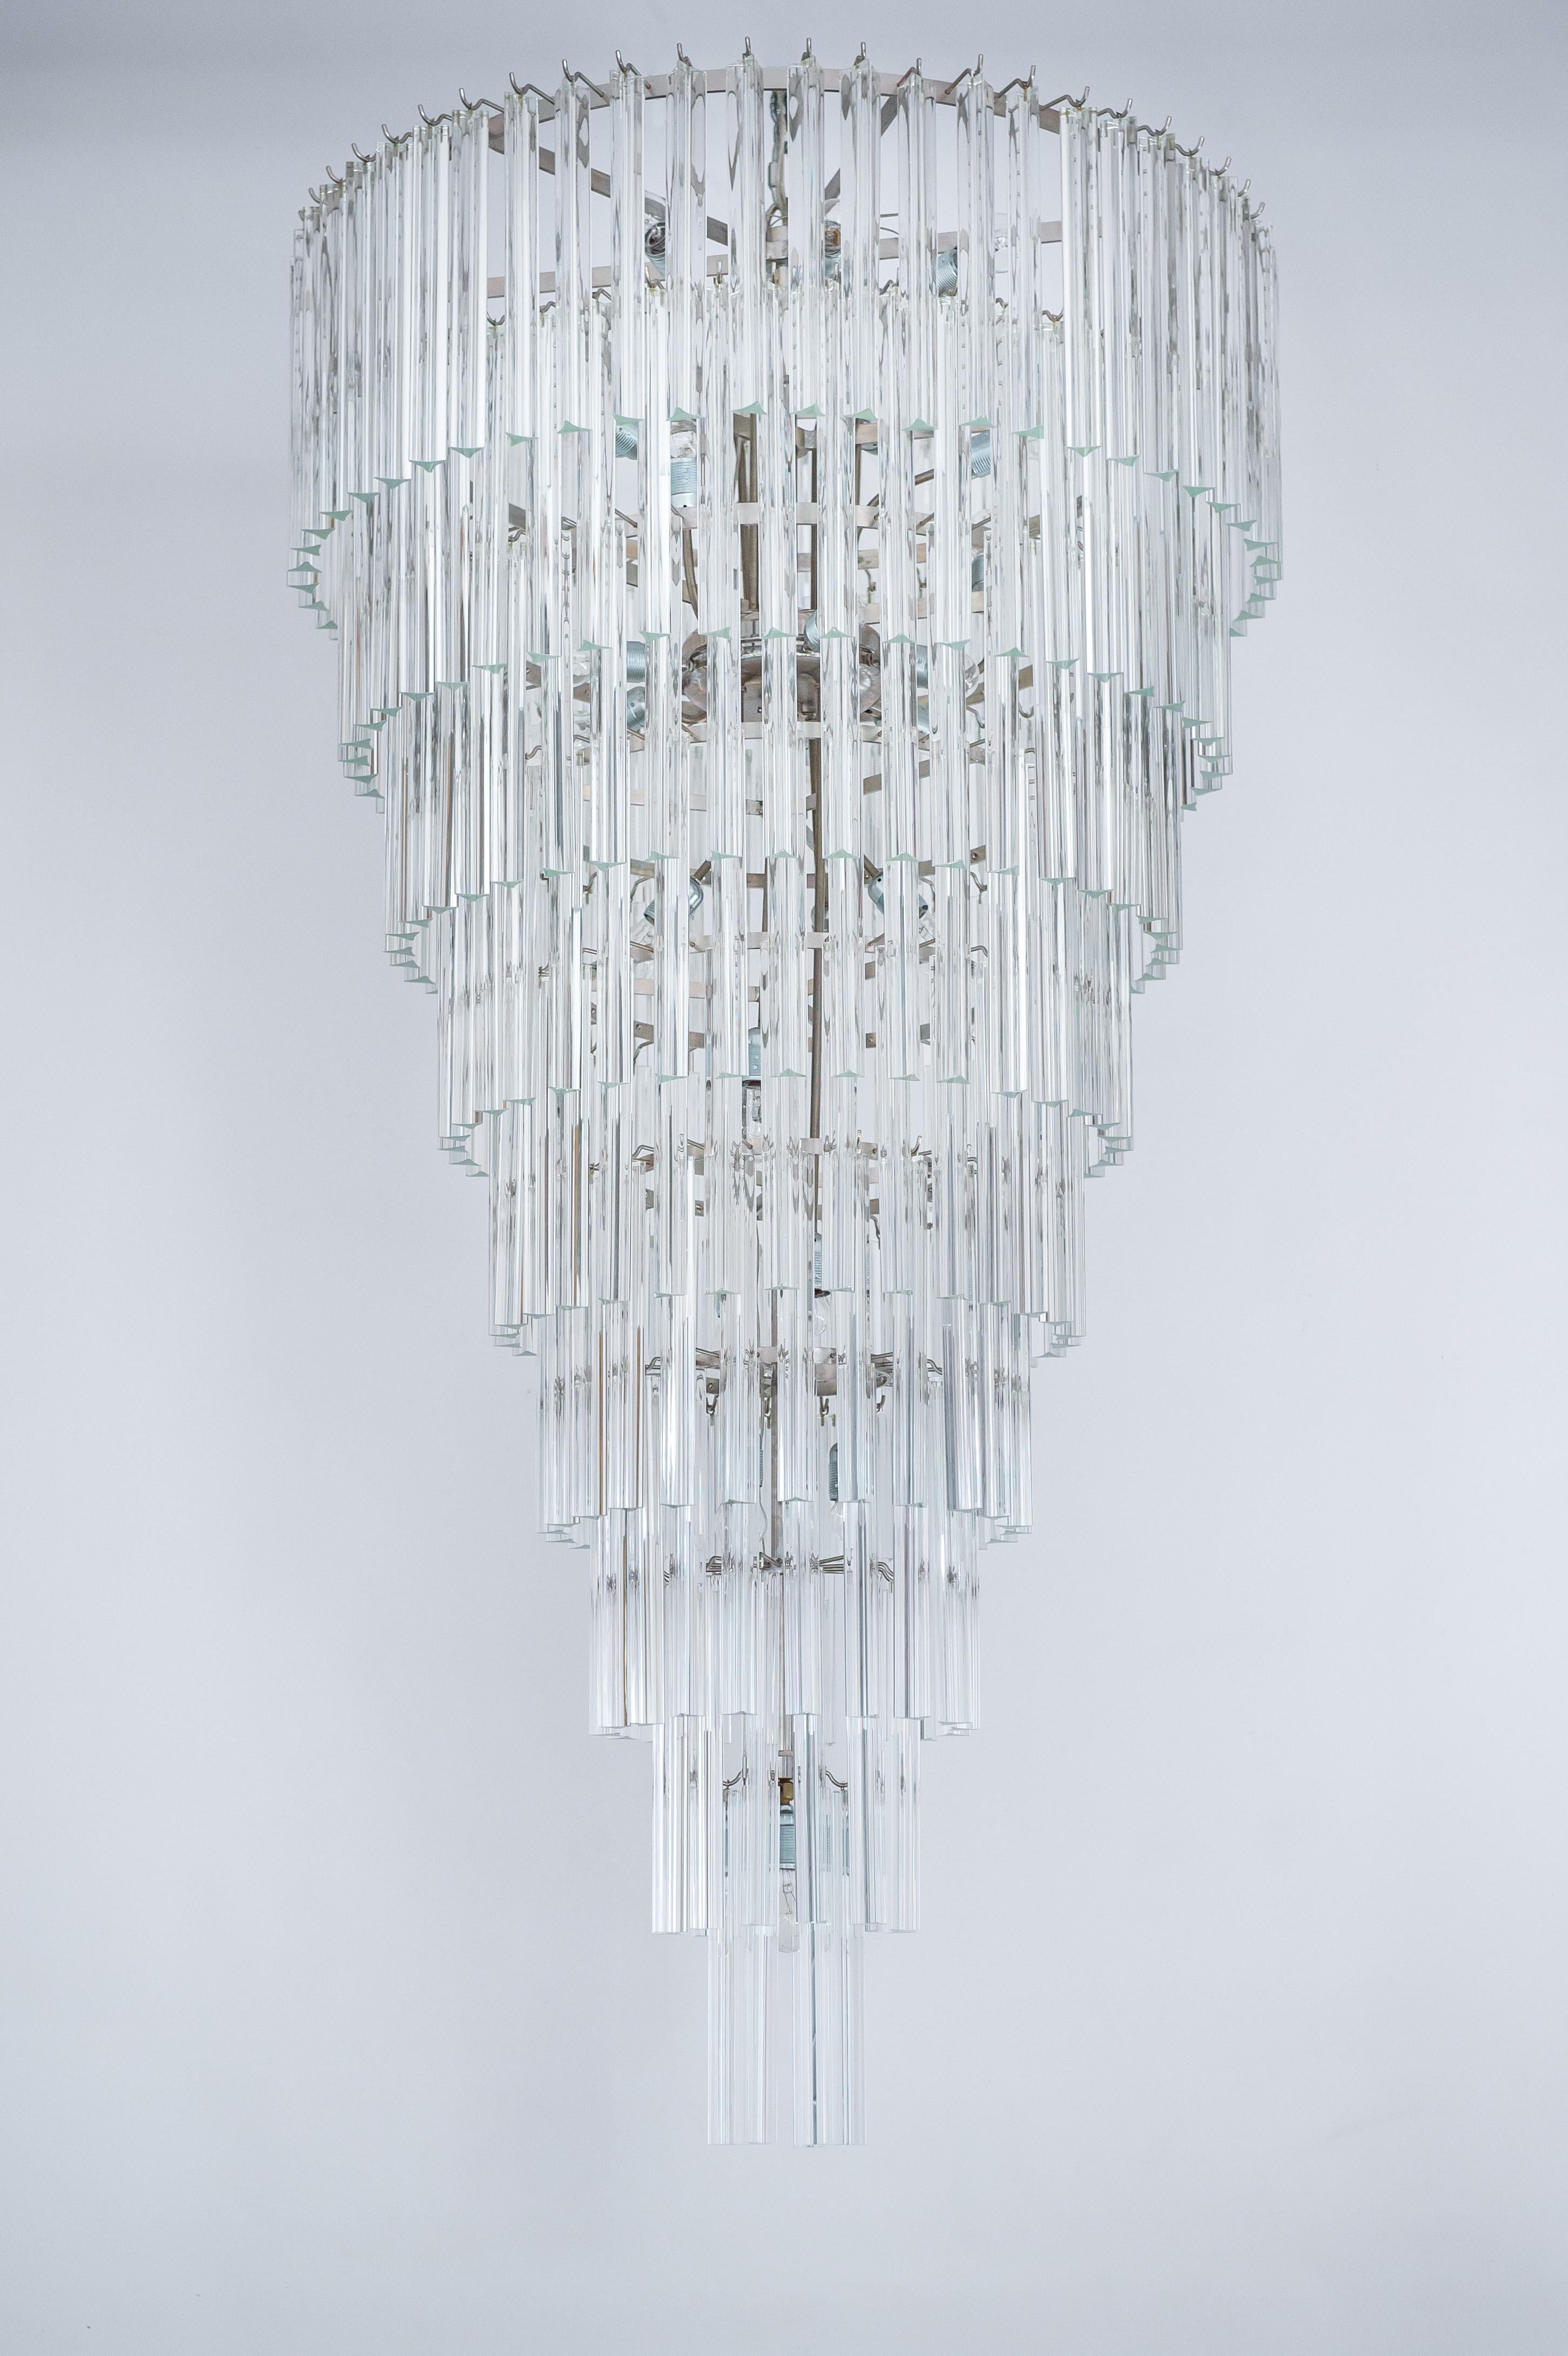 lustre à cône en verre de Murano transparent du 21e siècle, fabriqué à Venise.
Ce lustre exceptionnel porte en lui une touche raffinée de Venise, par sa forme élégante et ses lumières brillantes, résultat de la tradition séculaire de la verrerie